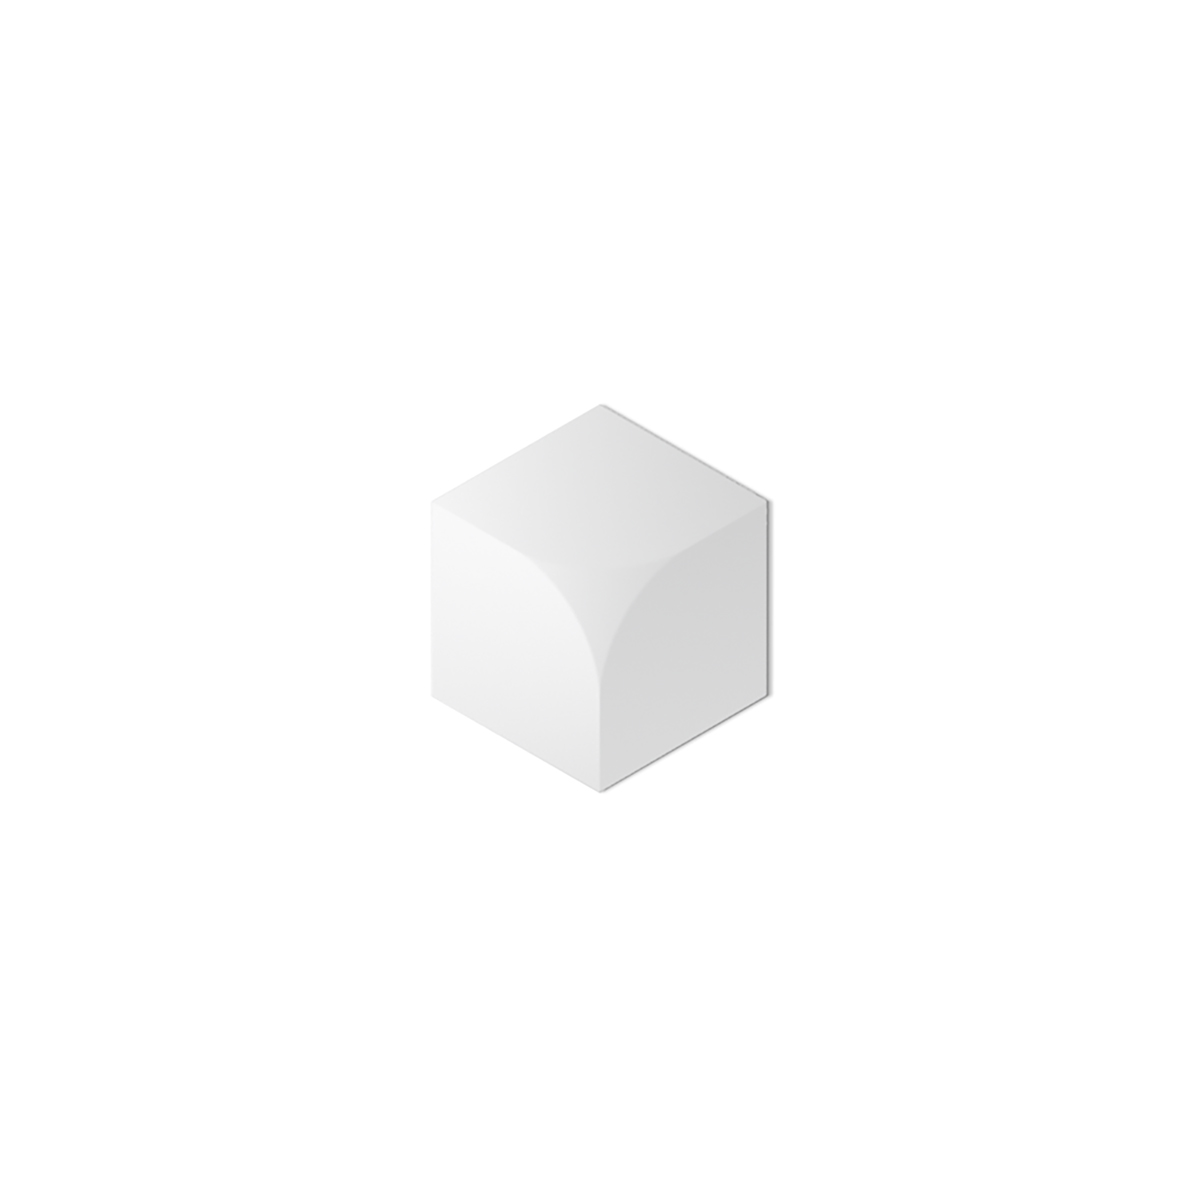 Panou decorativ Cubic, 33 X 28.6, Kalithea, Panouri decorative 3D 